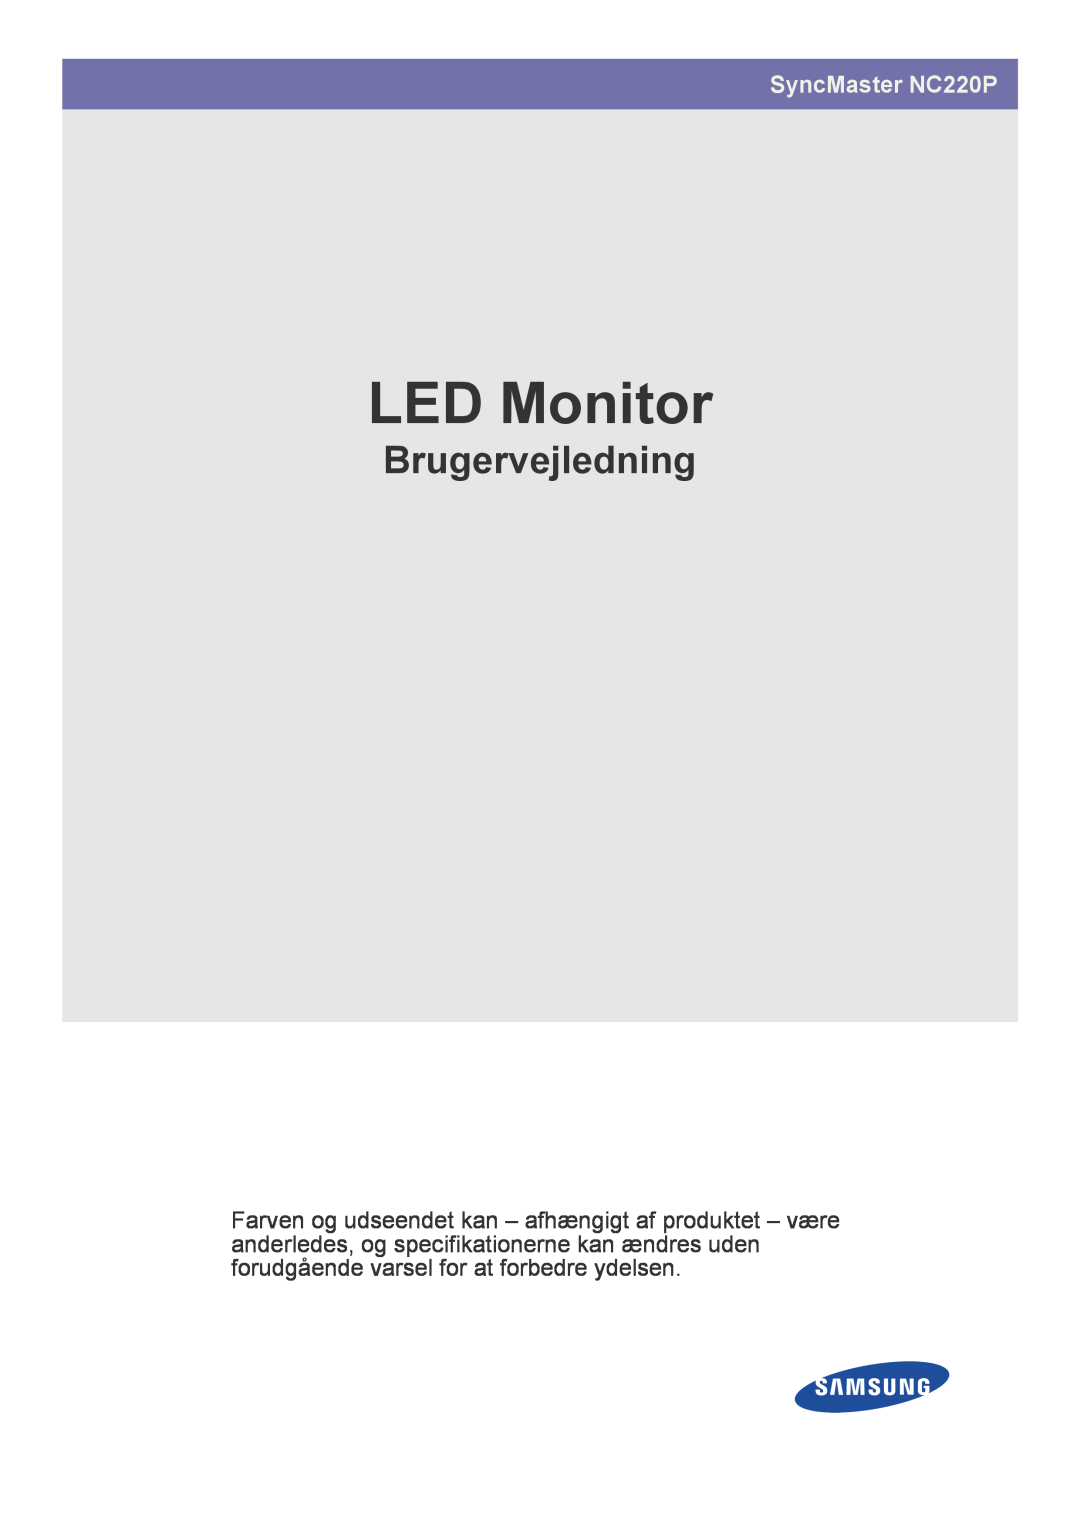 Samsung LF22NPBHBNP/EN manual LED Monitor, Brugervejledning, SyncMaster NC220P 